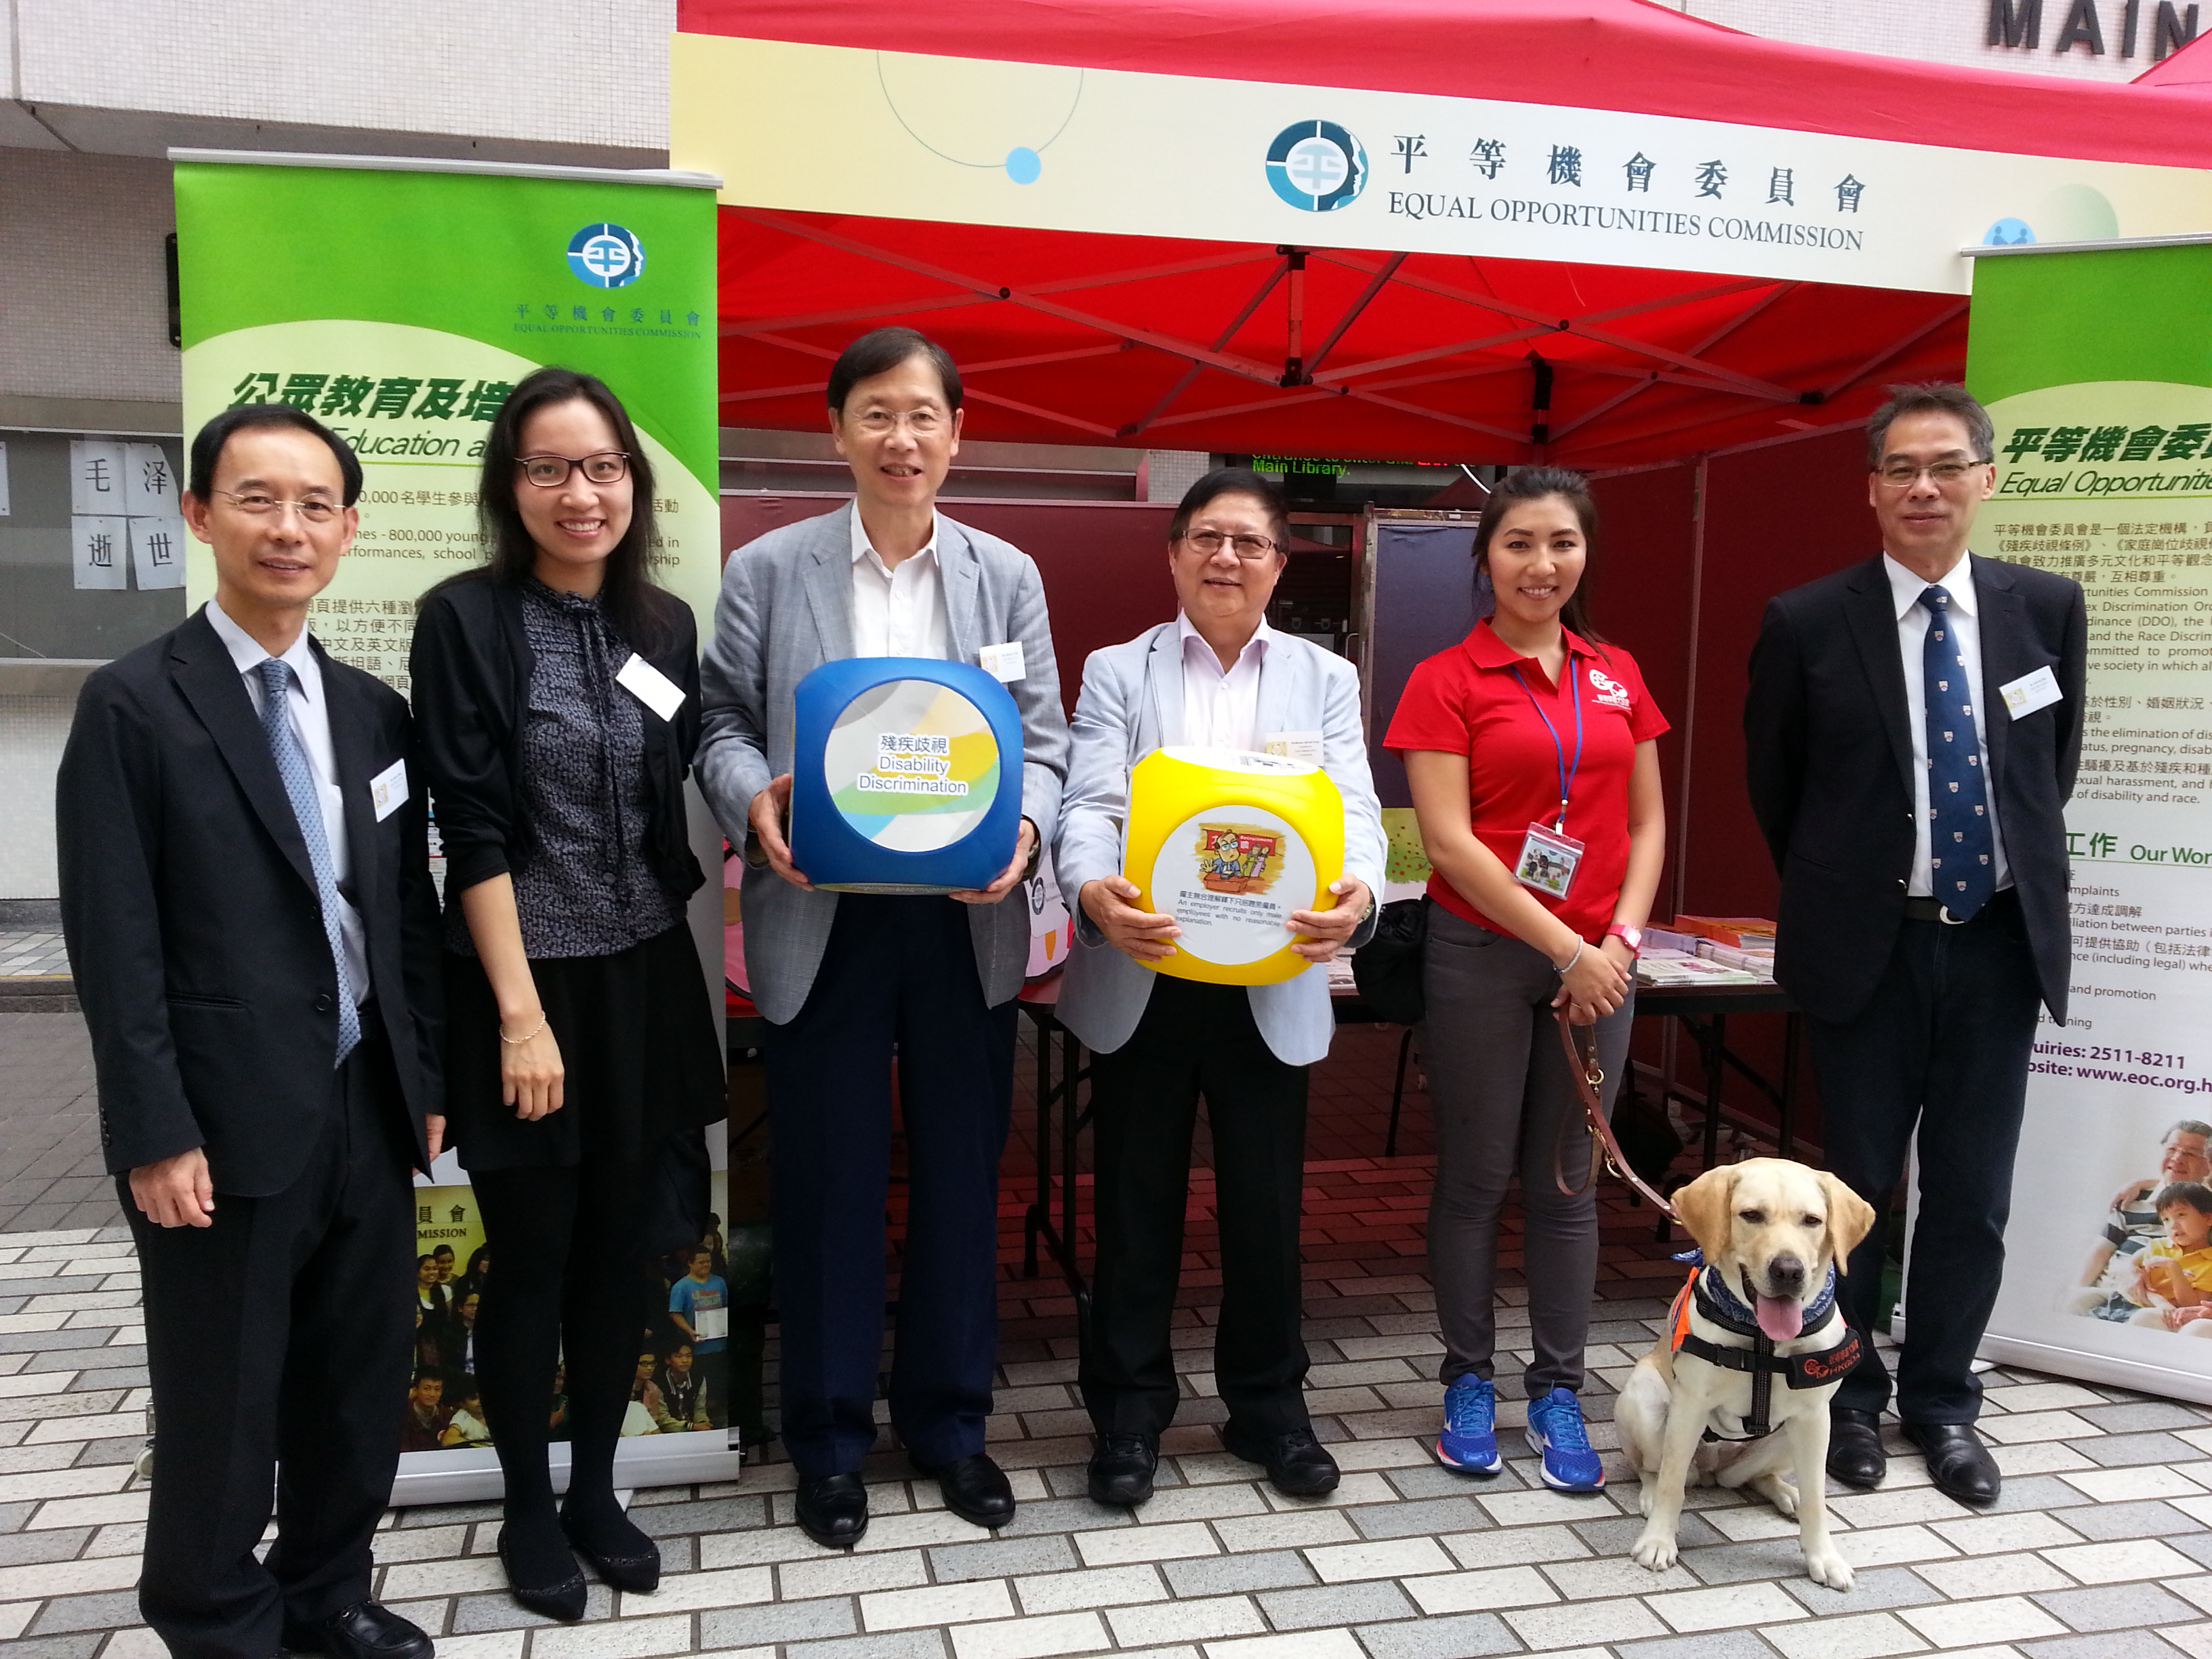 平機會主席陳章明教授與其他平機會職員支持香港大學的平等機會節